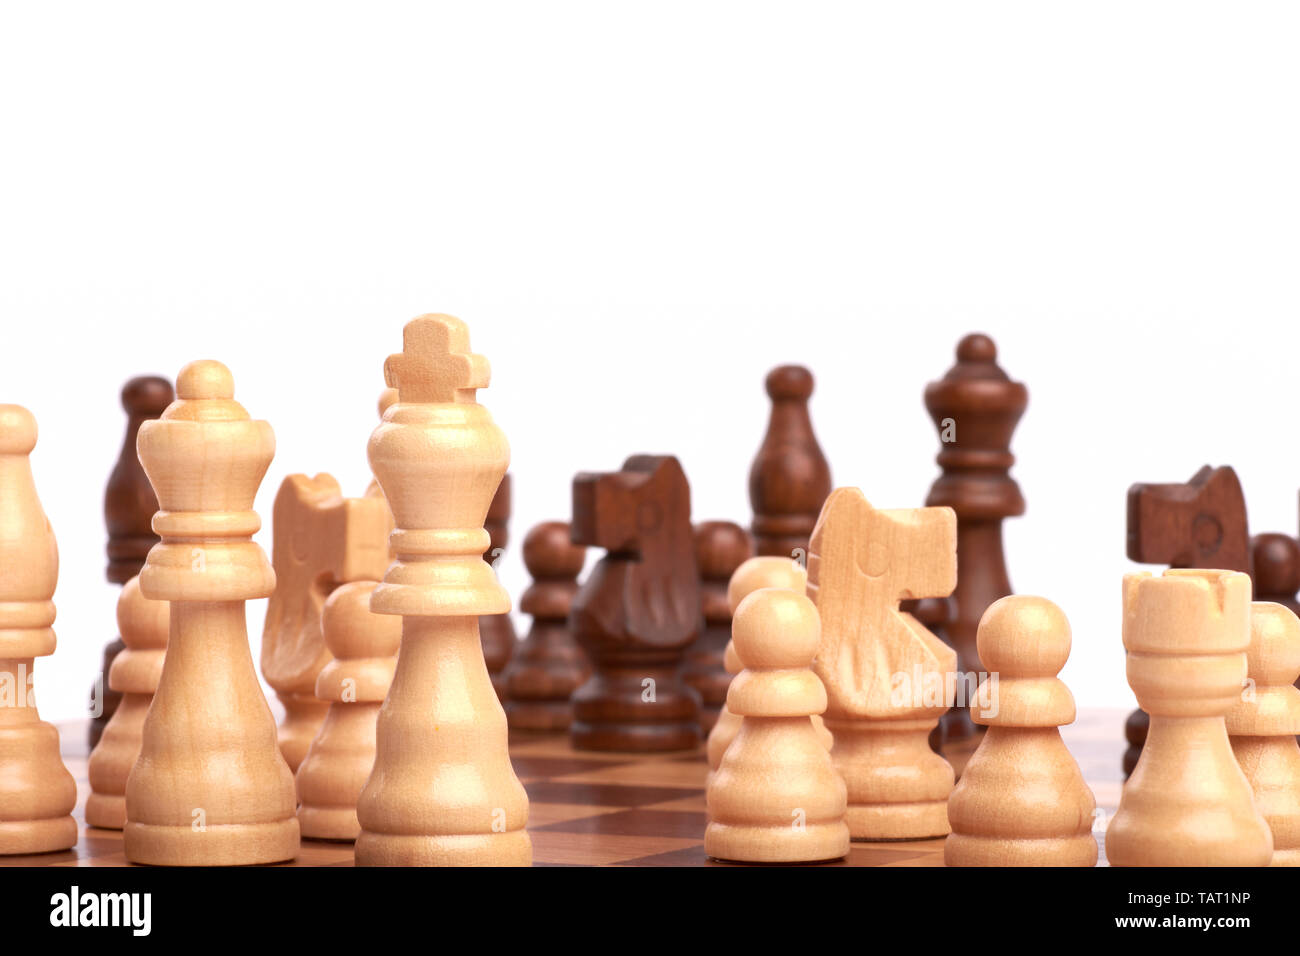 Jouer un jeu d'échecs ou d'une bataille. Pièces en bois blanc et noir sur le conseil et la planification d'une stratégie de l'équipe commune - Isolé sur fond blanc. Banque D'Images